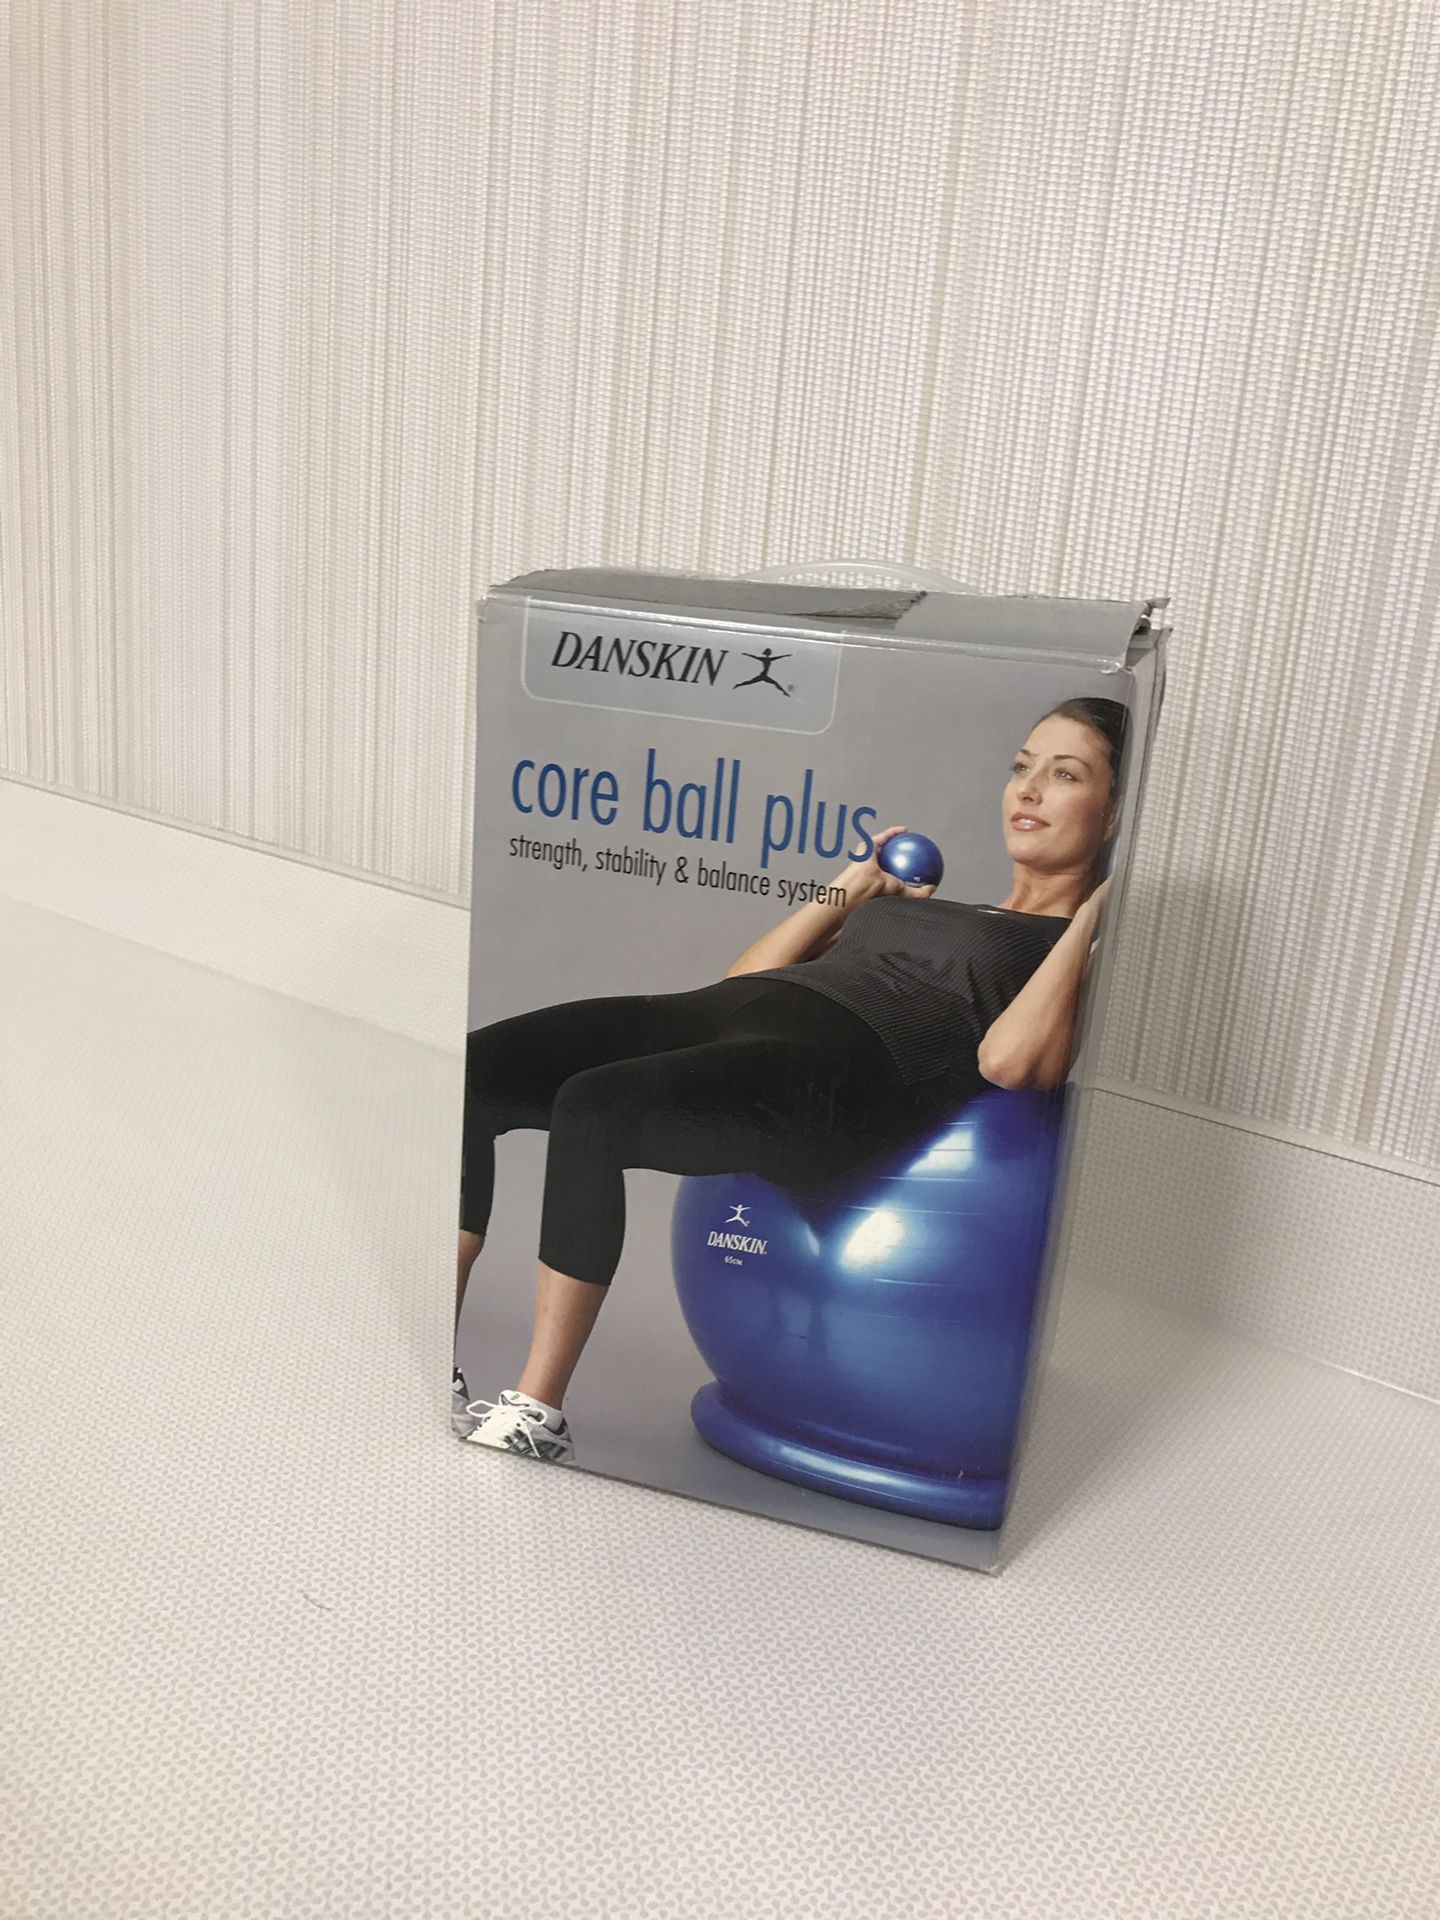 Core ball plus yoga workout